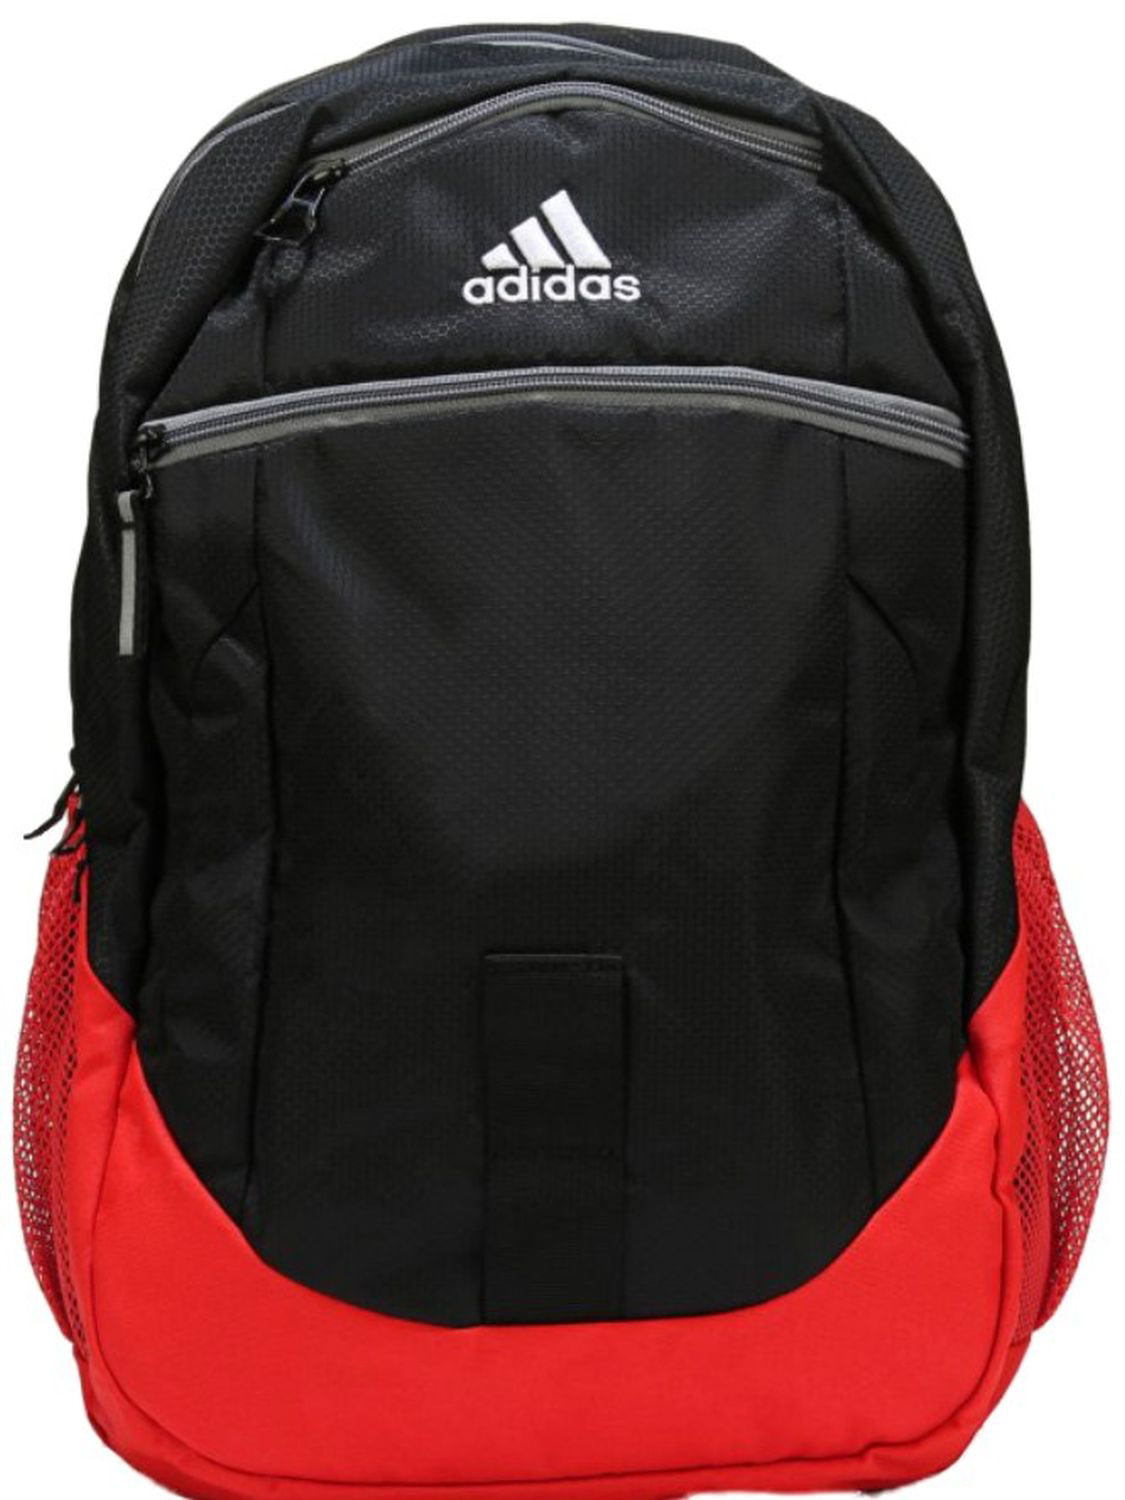 adidas backpack walmart